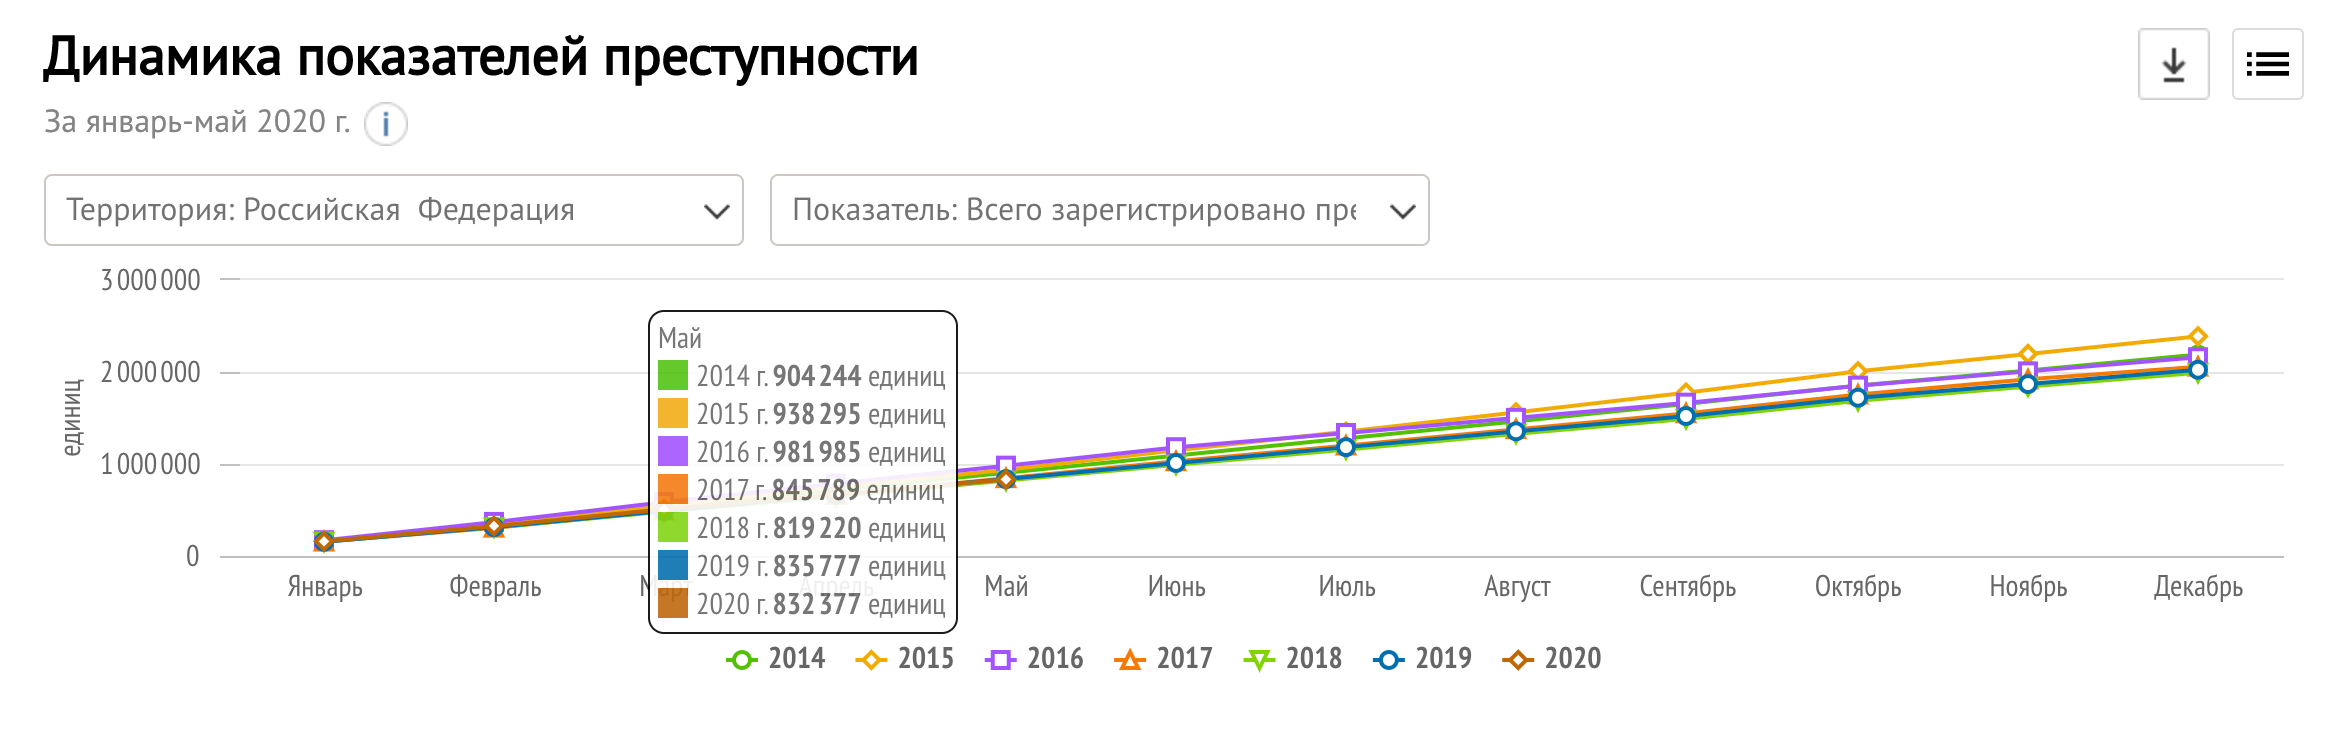 Организации зарегистрированные в 2020 году. Динамика преступности. Динамика преступности в России за 2020 год. График динамики преступности. Преступность в РФ график по 2020.